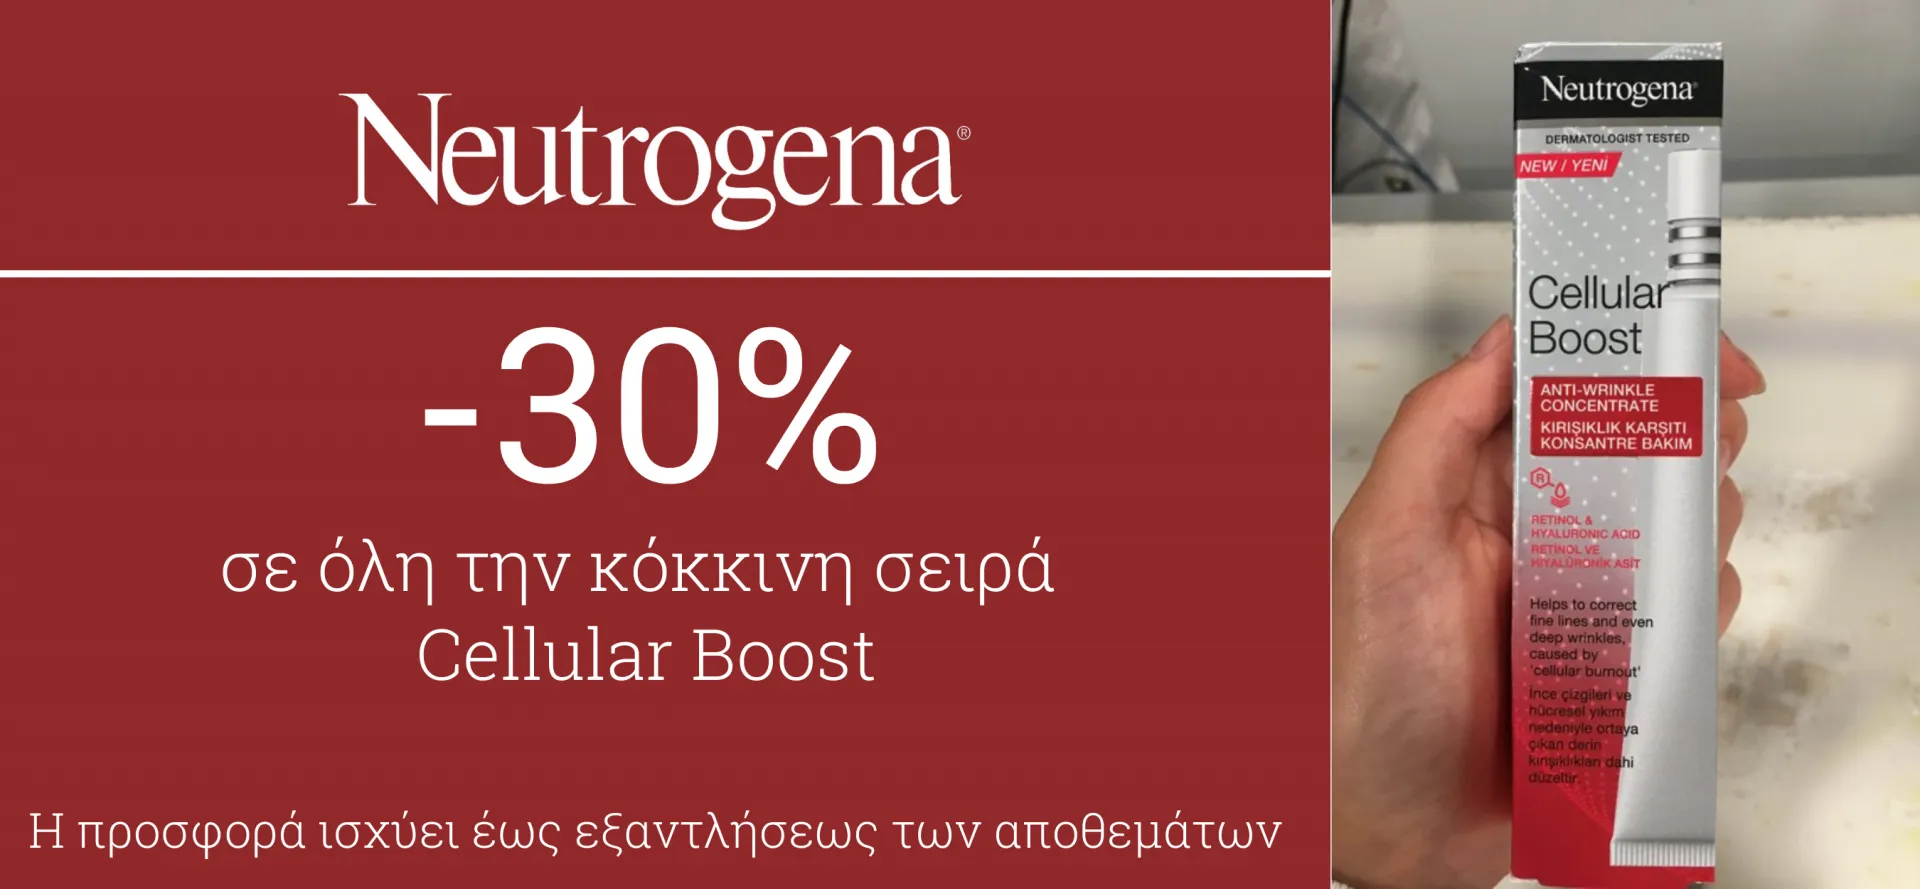 αρχική κινητα sales -30% neutrogena red